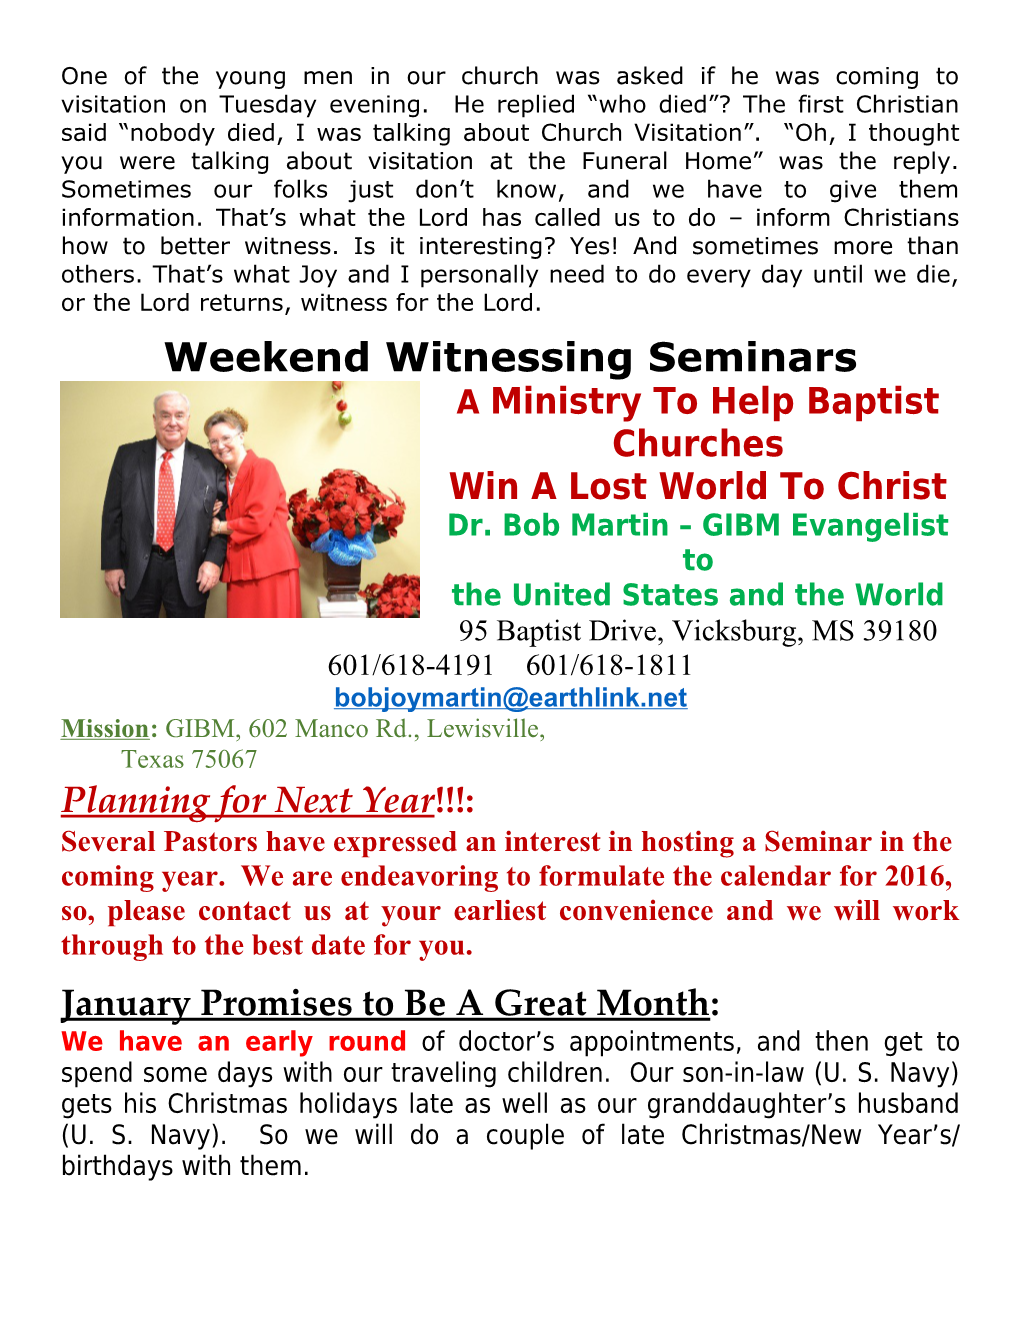 Weekend Witnessing Seminars